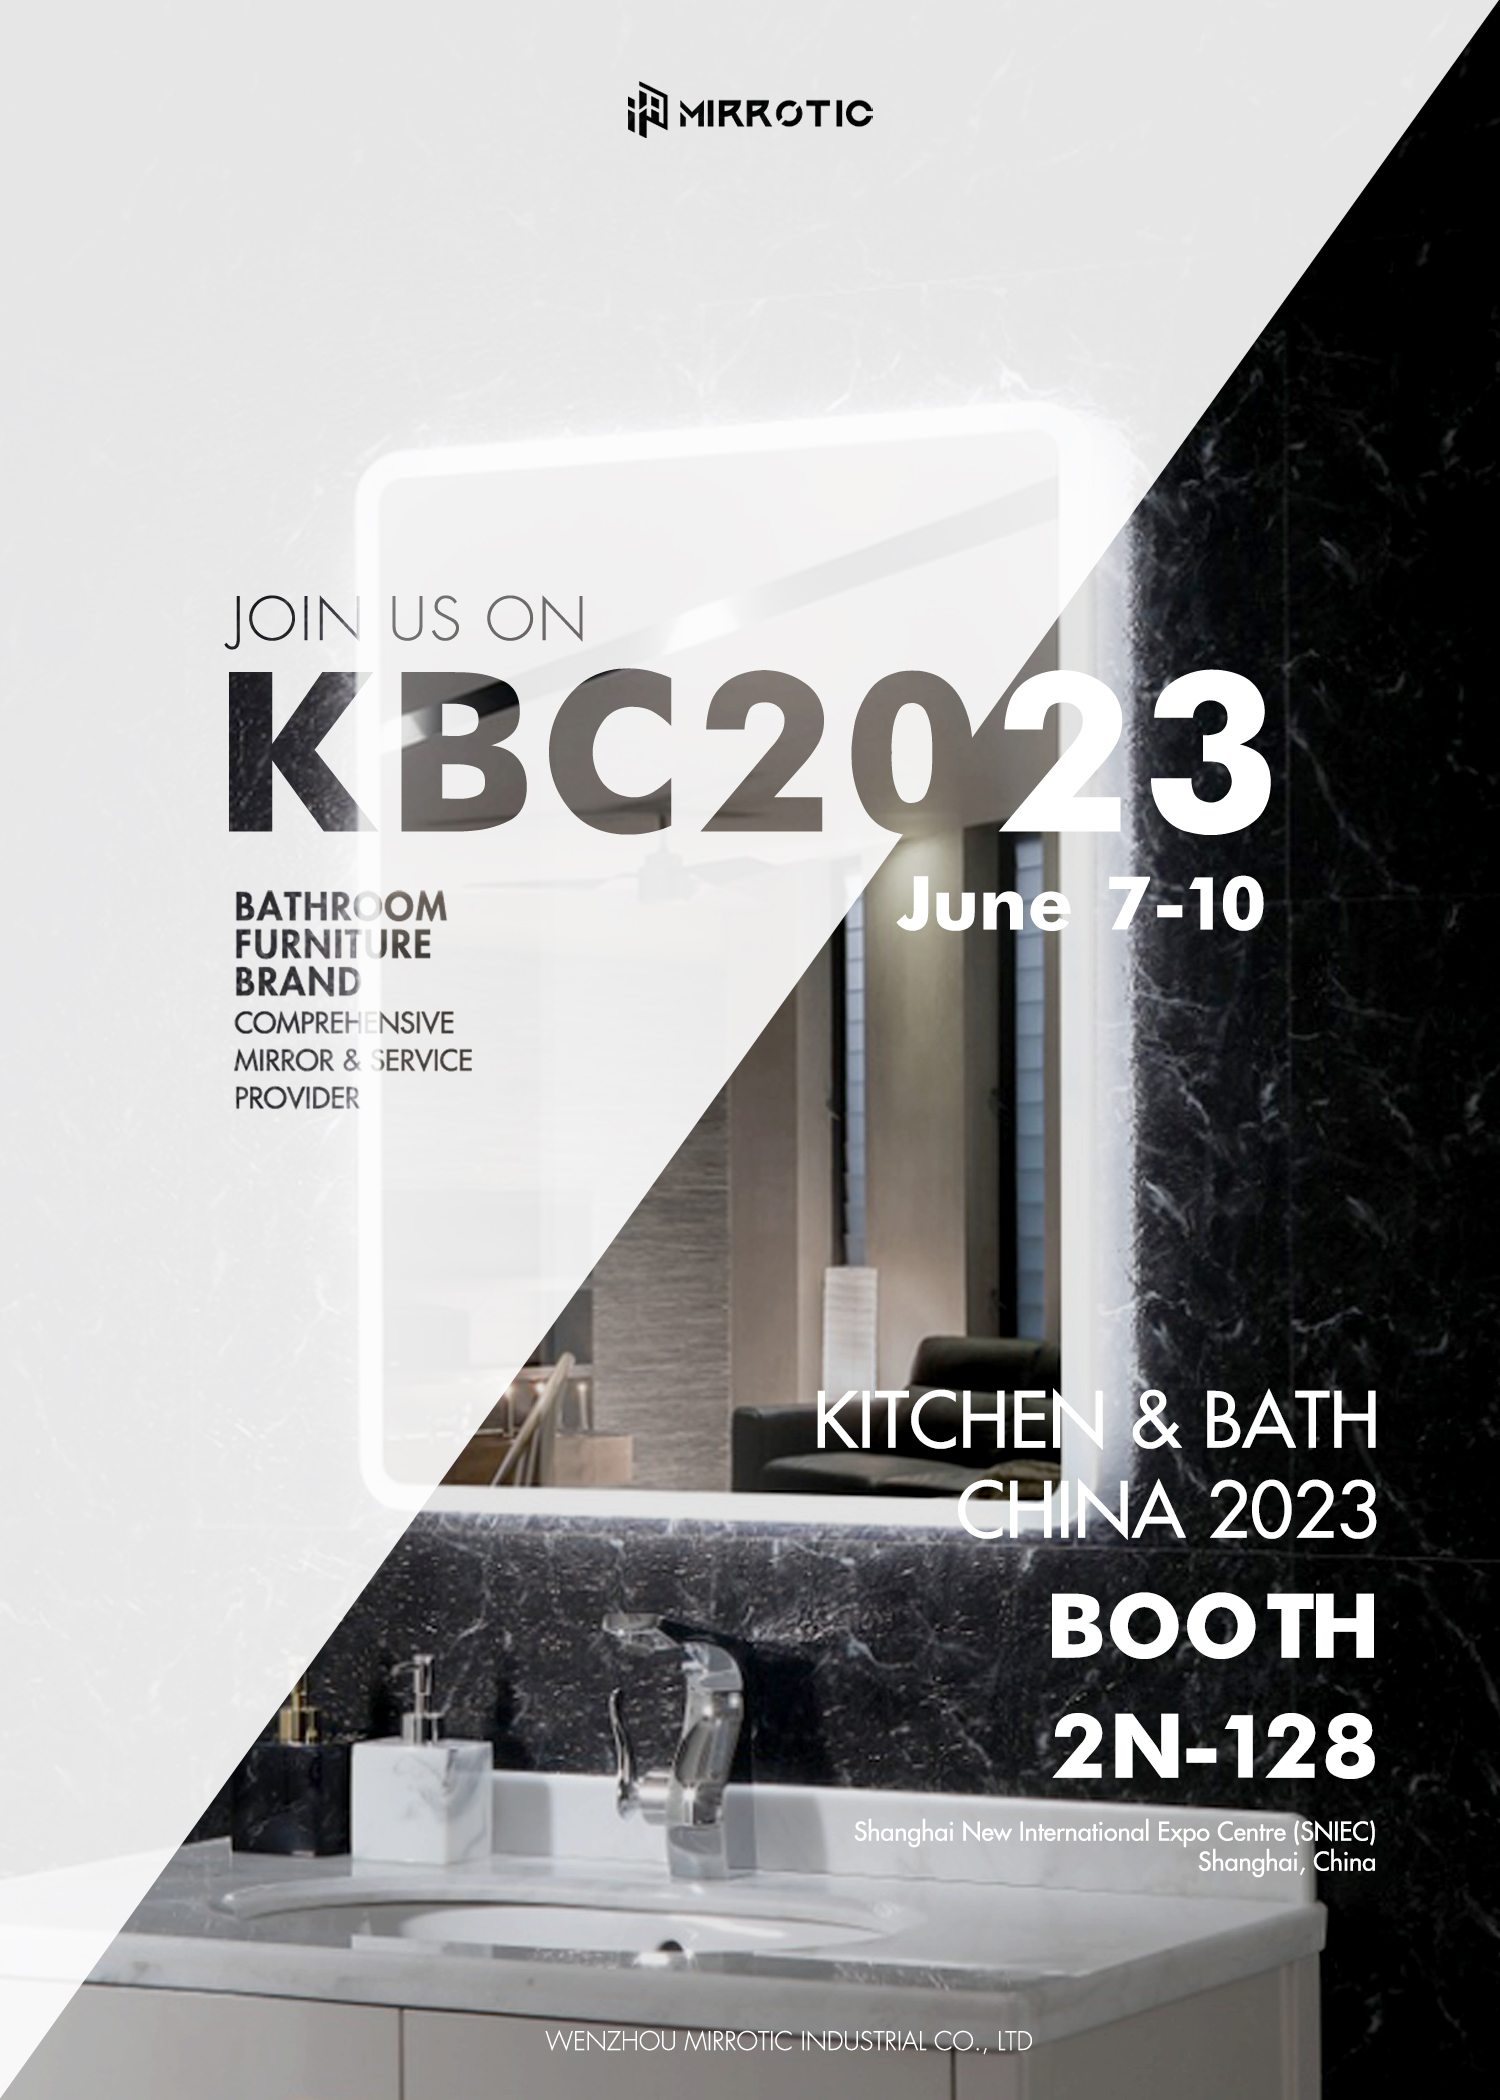 Die KBC2023 Expo ist jetzt eröffnet und wir laden Sie ein, unseren Stand zu besuchen!